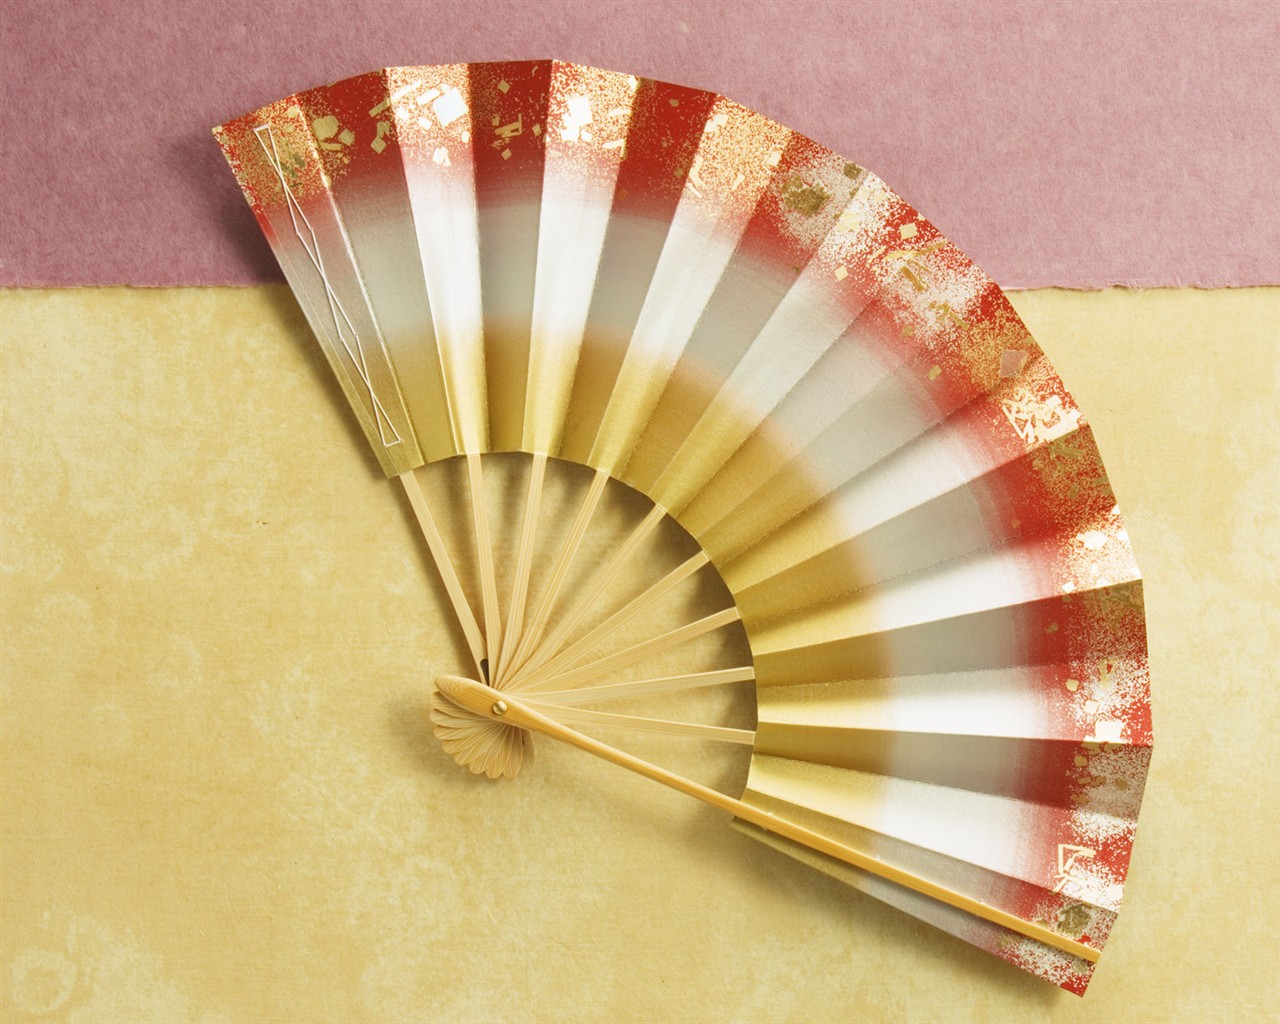 Fondos de año nuevo japonés Cultura #12 - 1280x1024